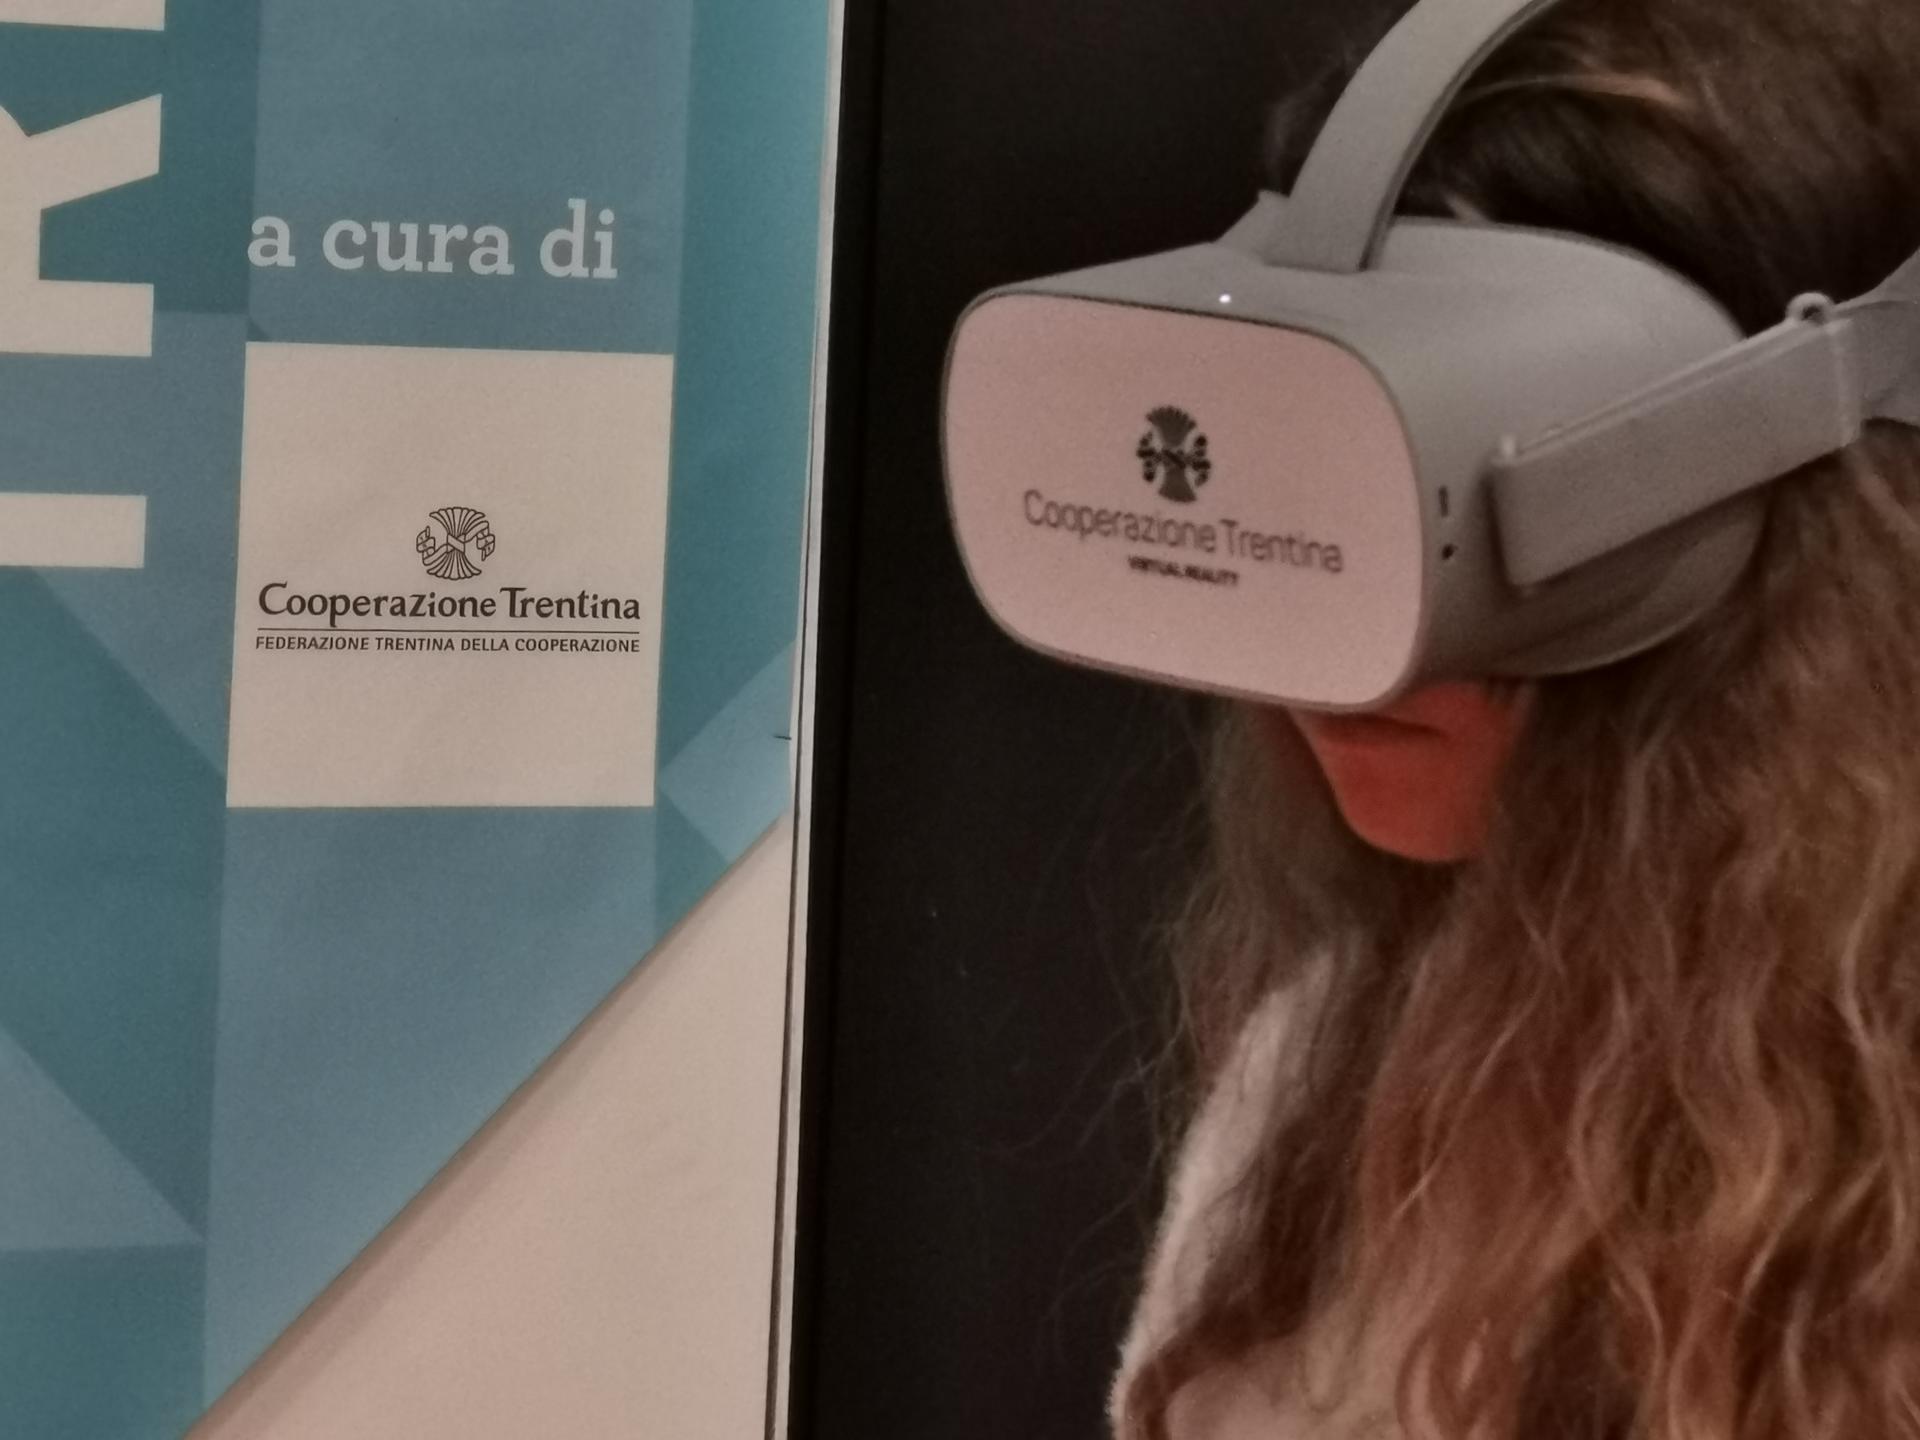 La Federazione Trentina della Cooperazione tra i protagonisti del primo Social Innovation Campus - in programma ieri e oggi a Milano – con una innovativa proposta formativa rivolta alle scuole.